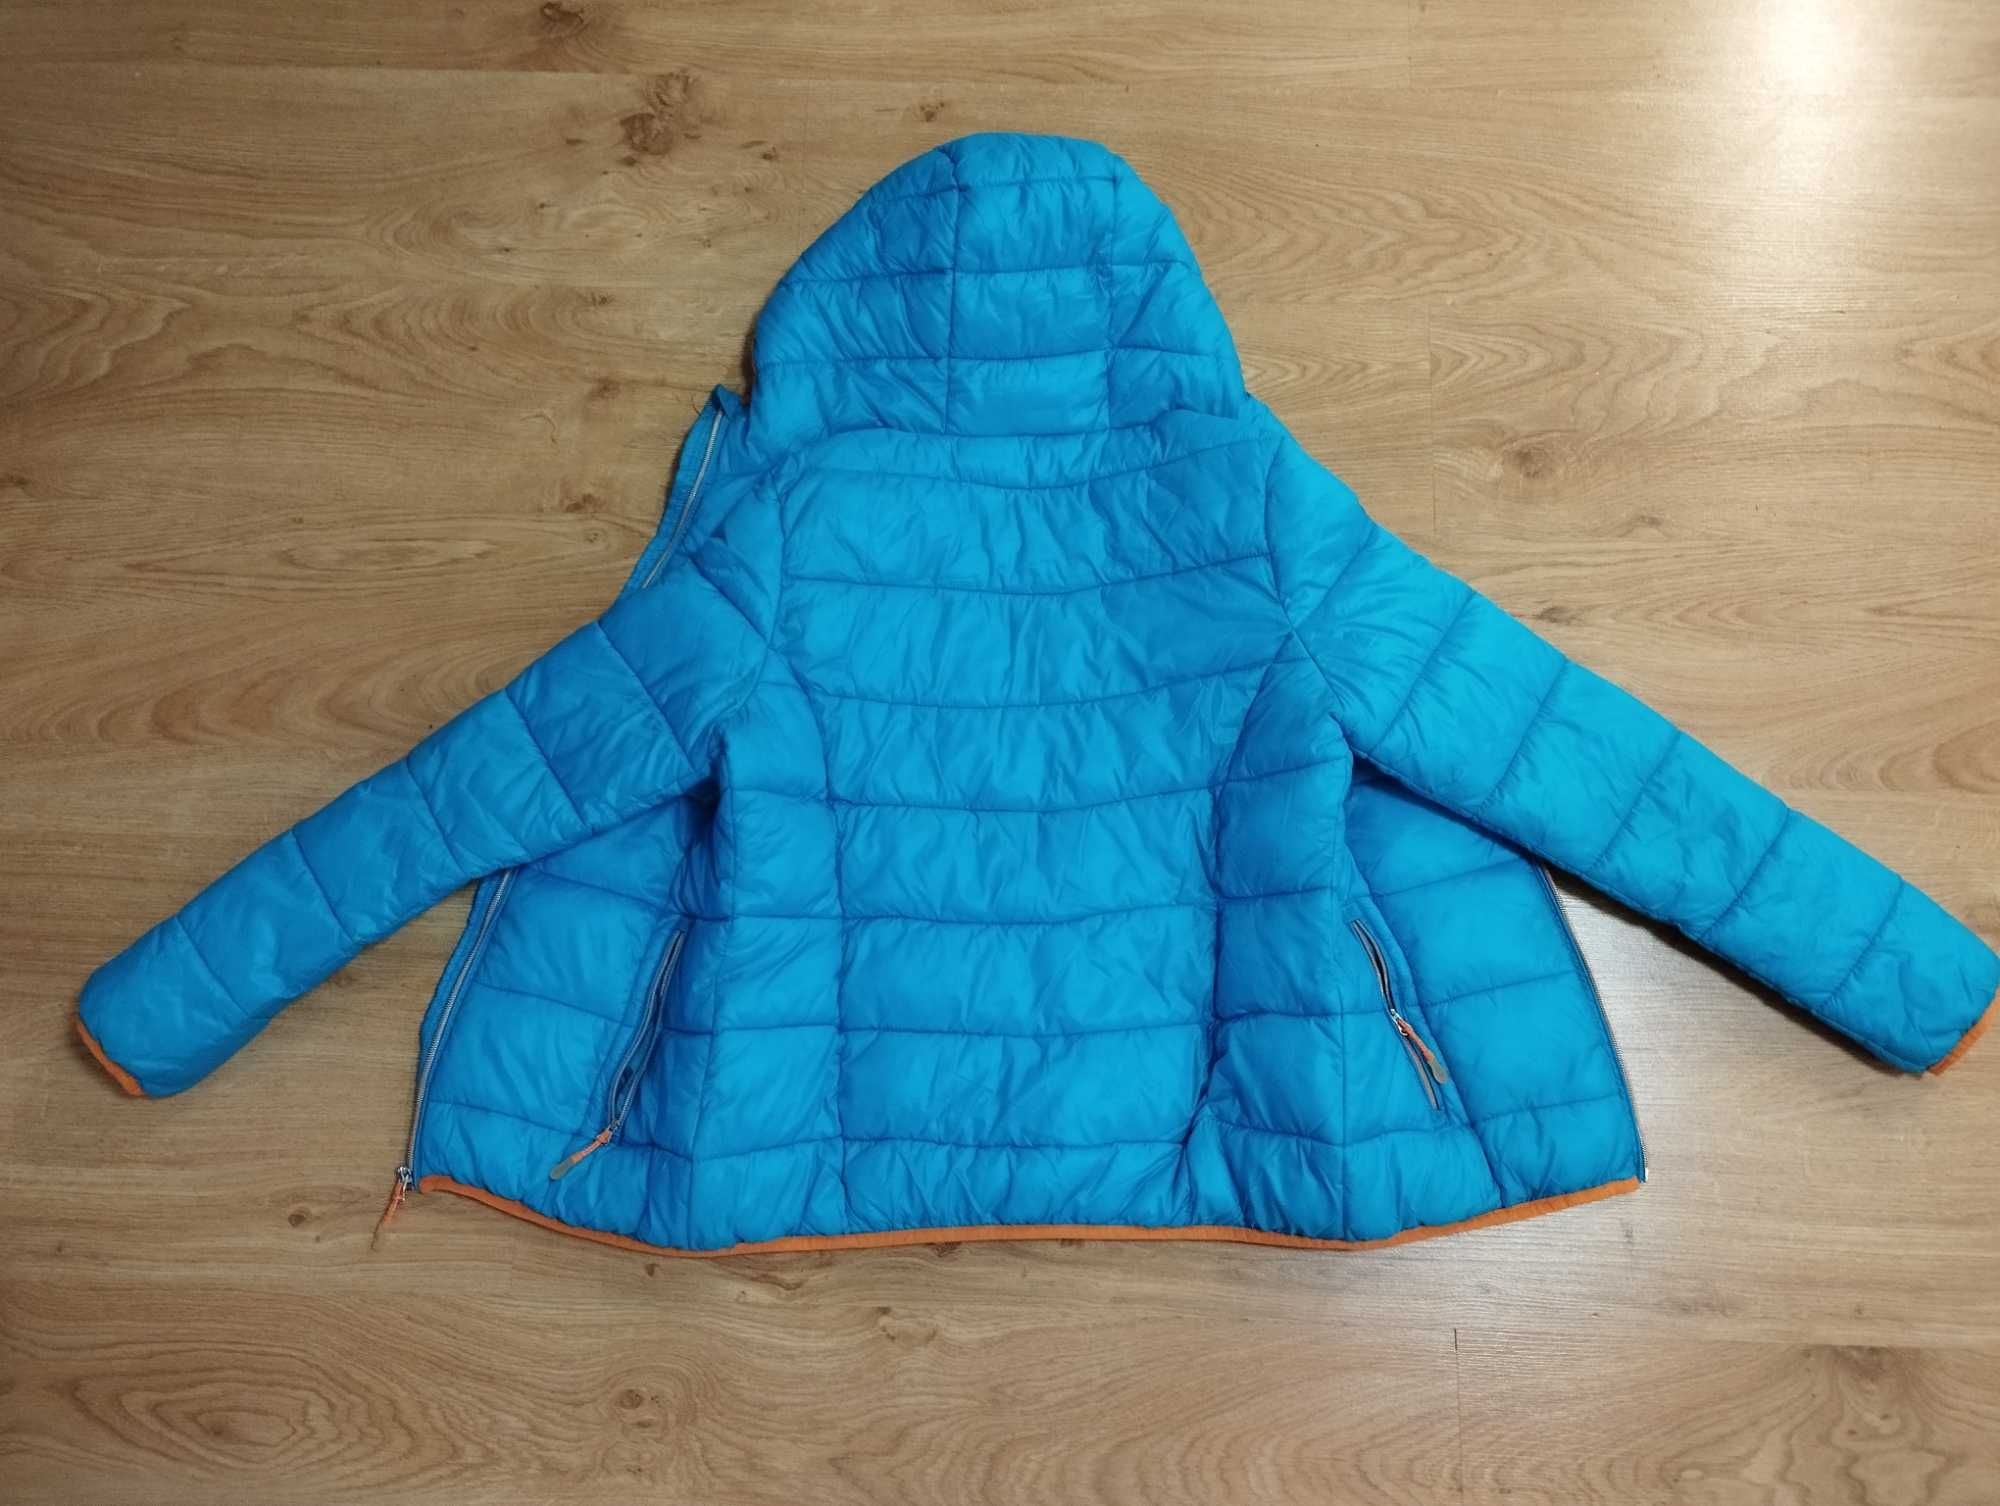 Damska kurtka puchowa w kolorze turkusowym, rozmiar M